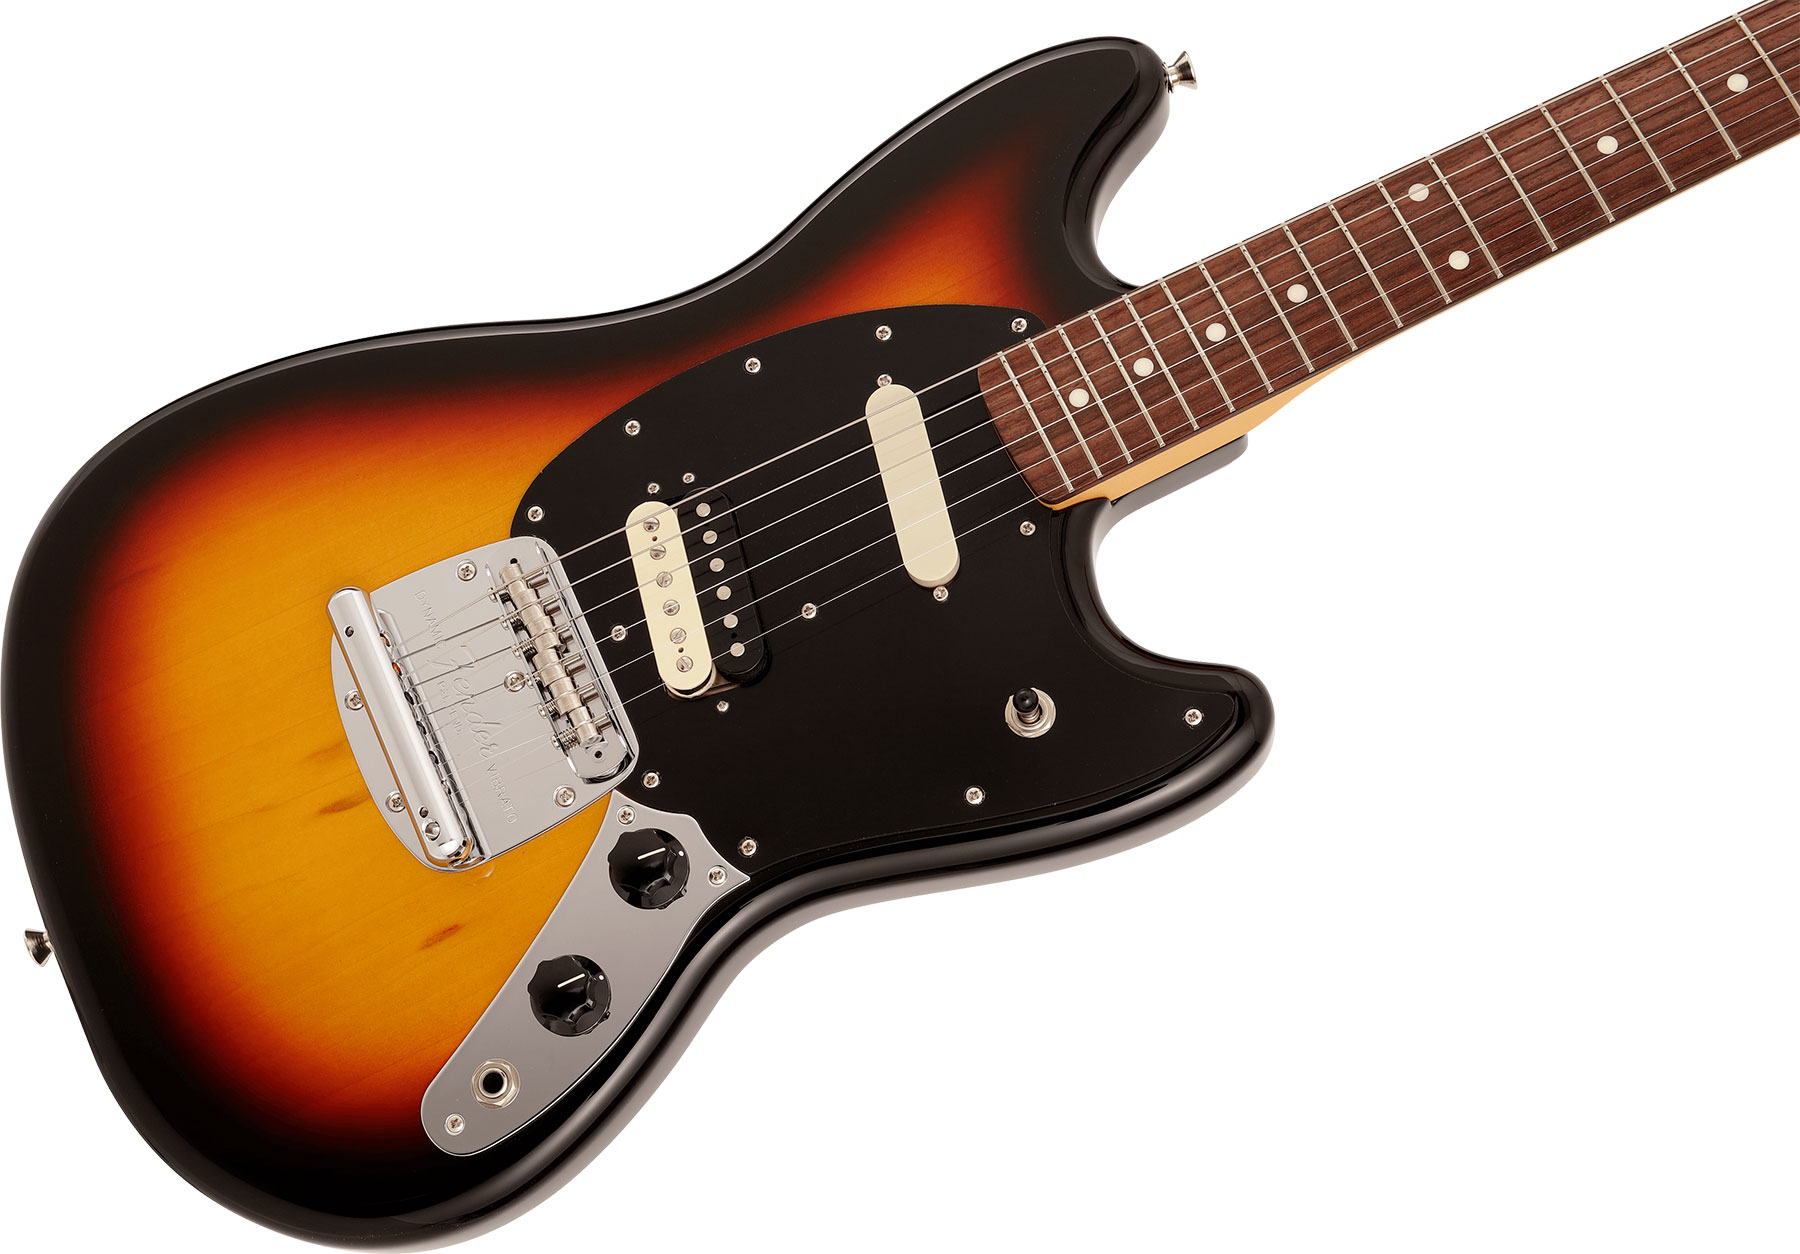 Fender Mustang Reverse Headstock Traditional Ltd Jap Hs Trem Rw - 3-color Sunburst - E-Gitarre in Str-Form - Variation 2